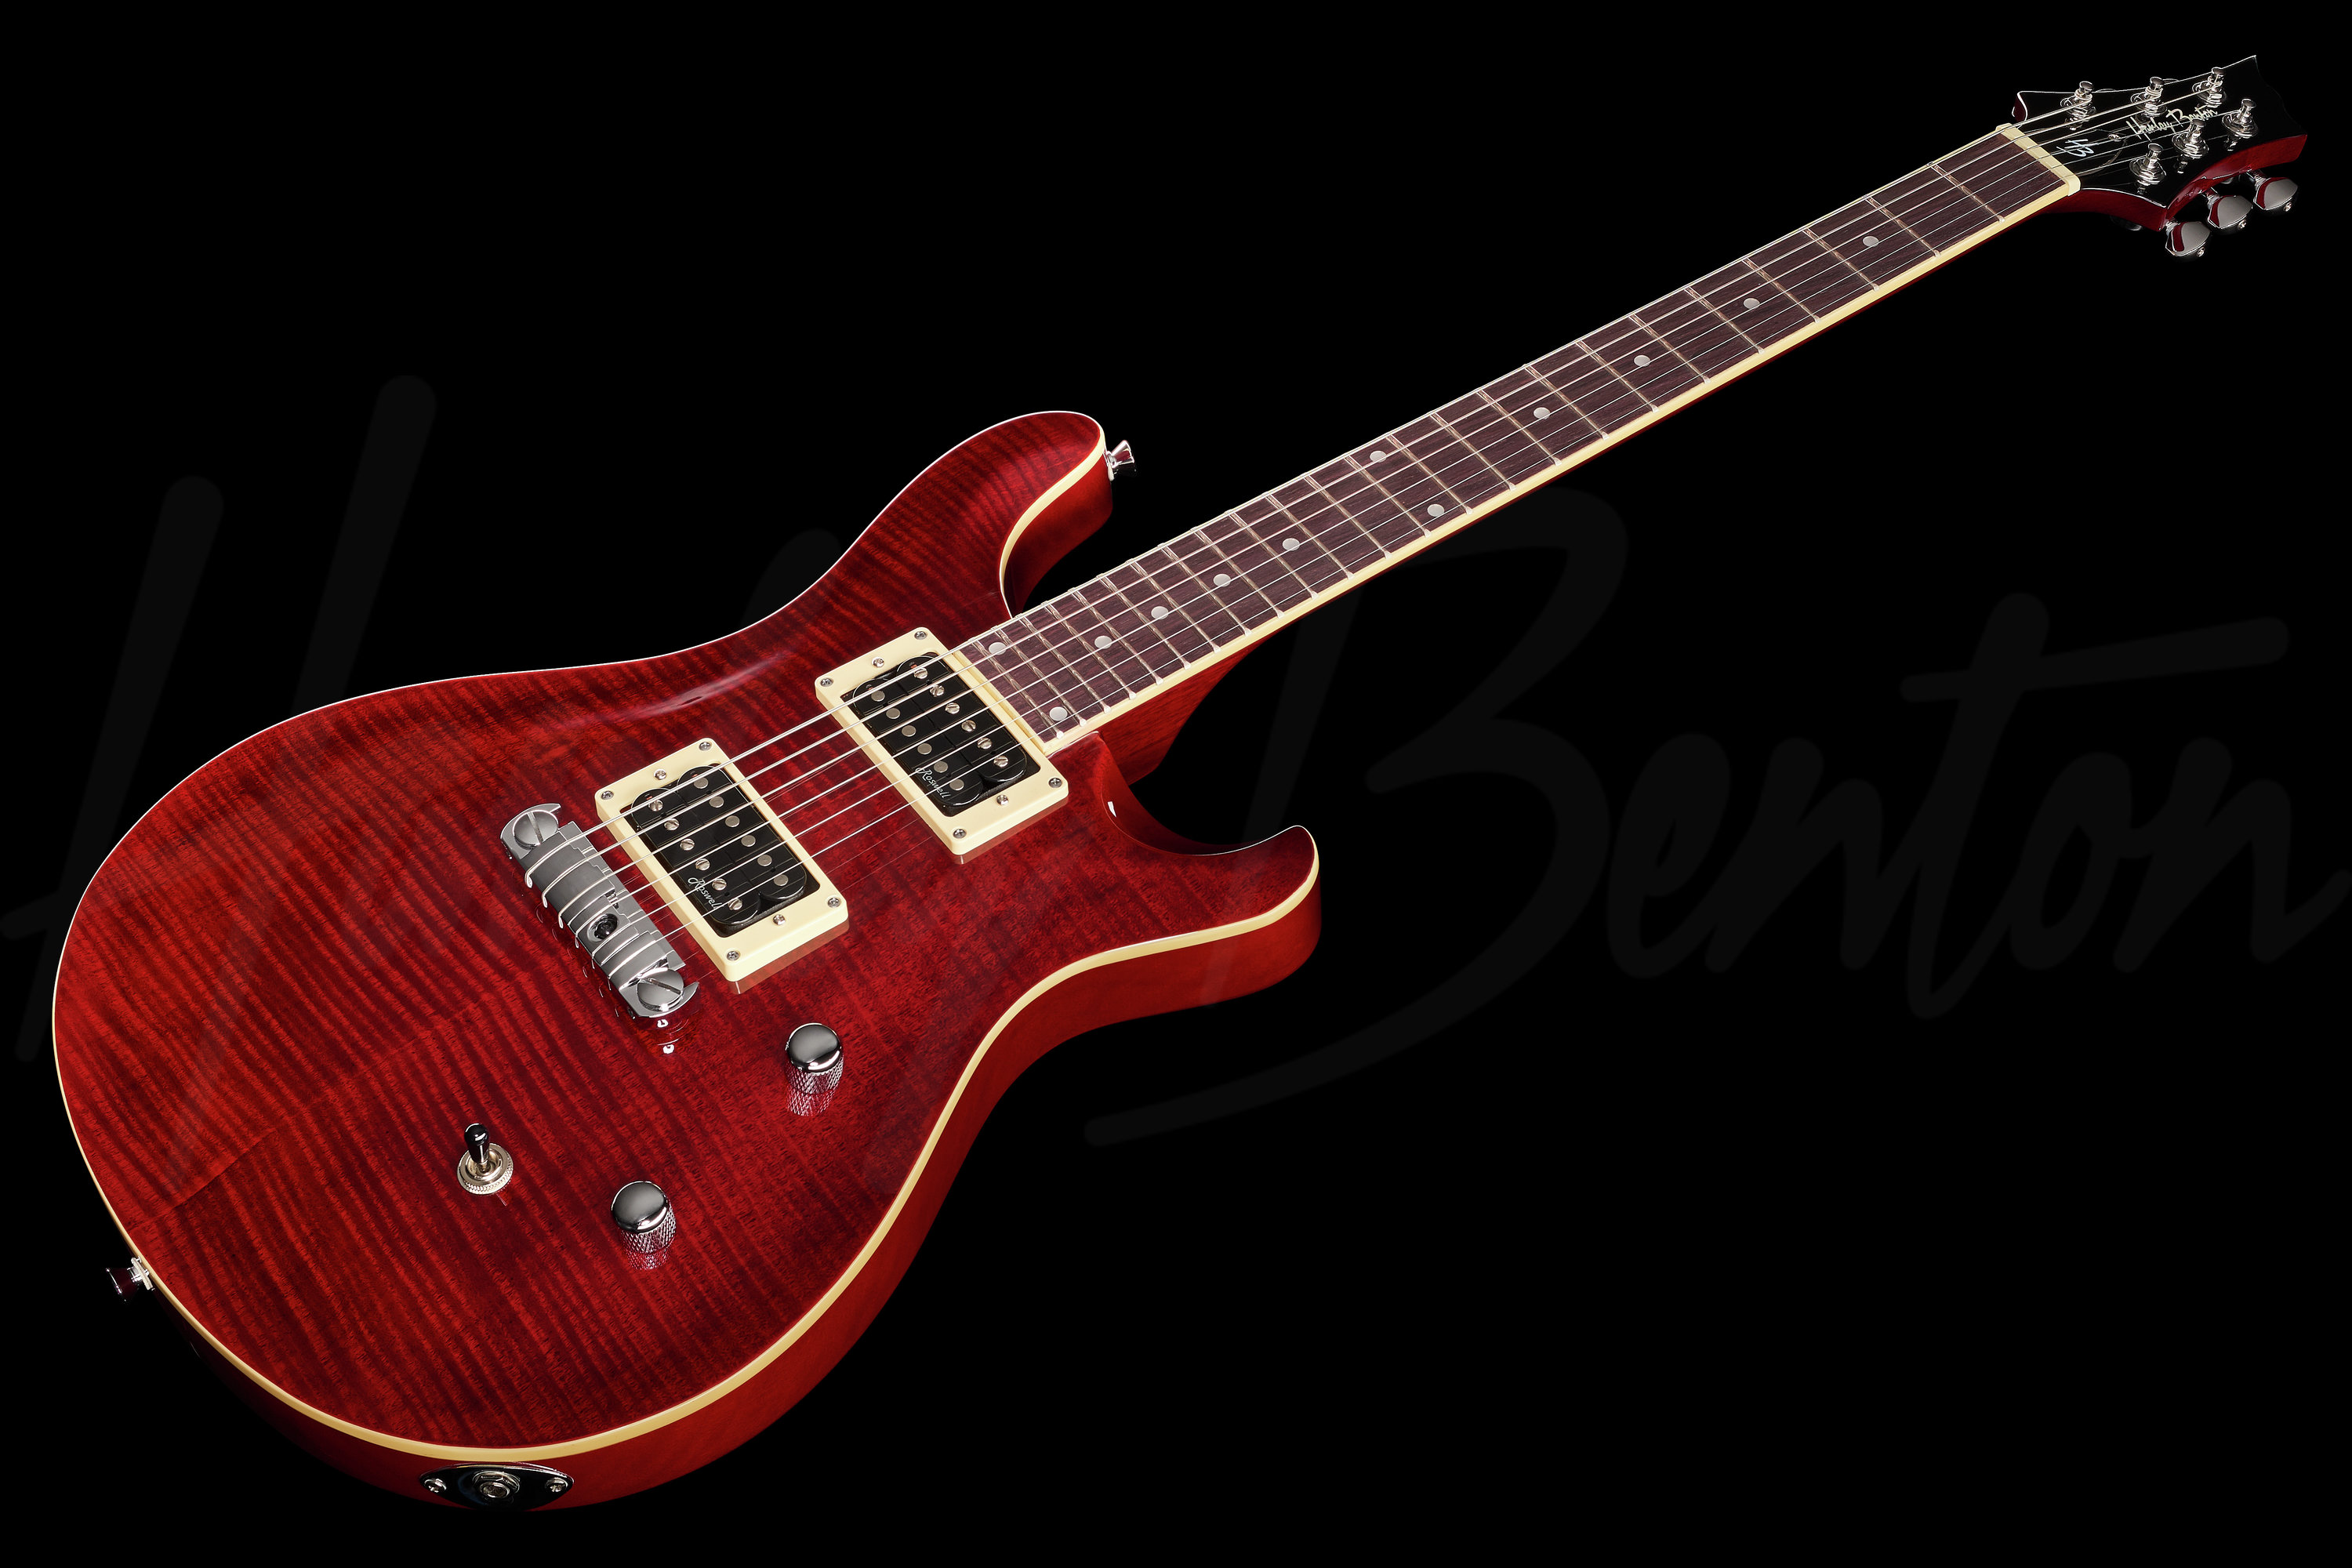 DeluxeseHarley Benton CST-24T Black Cherry Flame - ギター